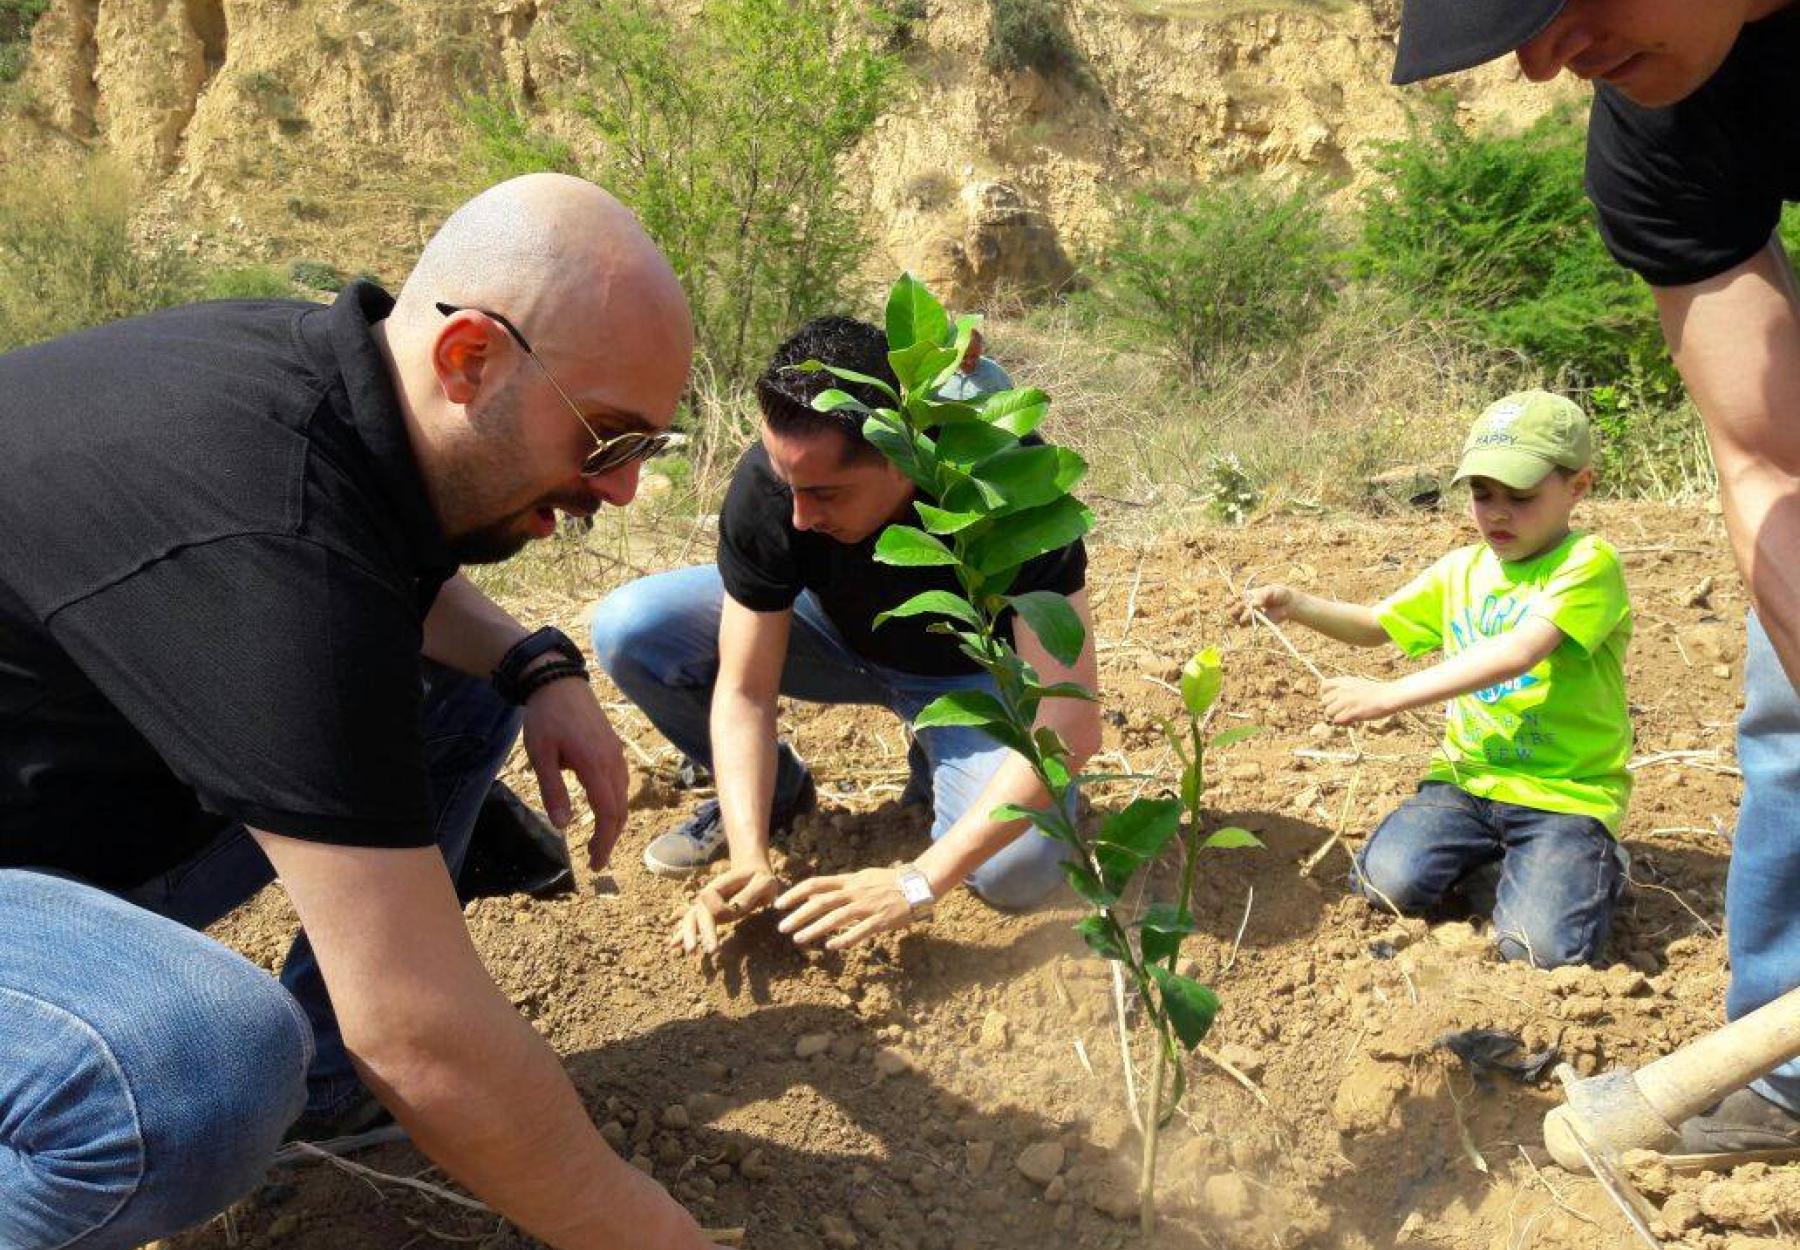 القافلة الخضراء تزرع 770 شجرة مثمرة في الأغوار الوسطى  والجنوبية بالتعاون مع بنك المؤسسة المصرفية و بنك صفوة الإسلامي و البنك الأهلي في الأردن